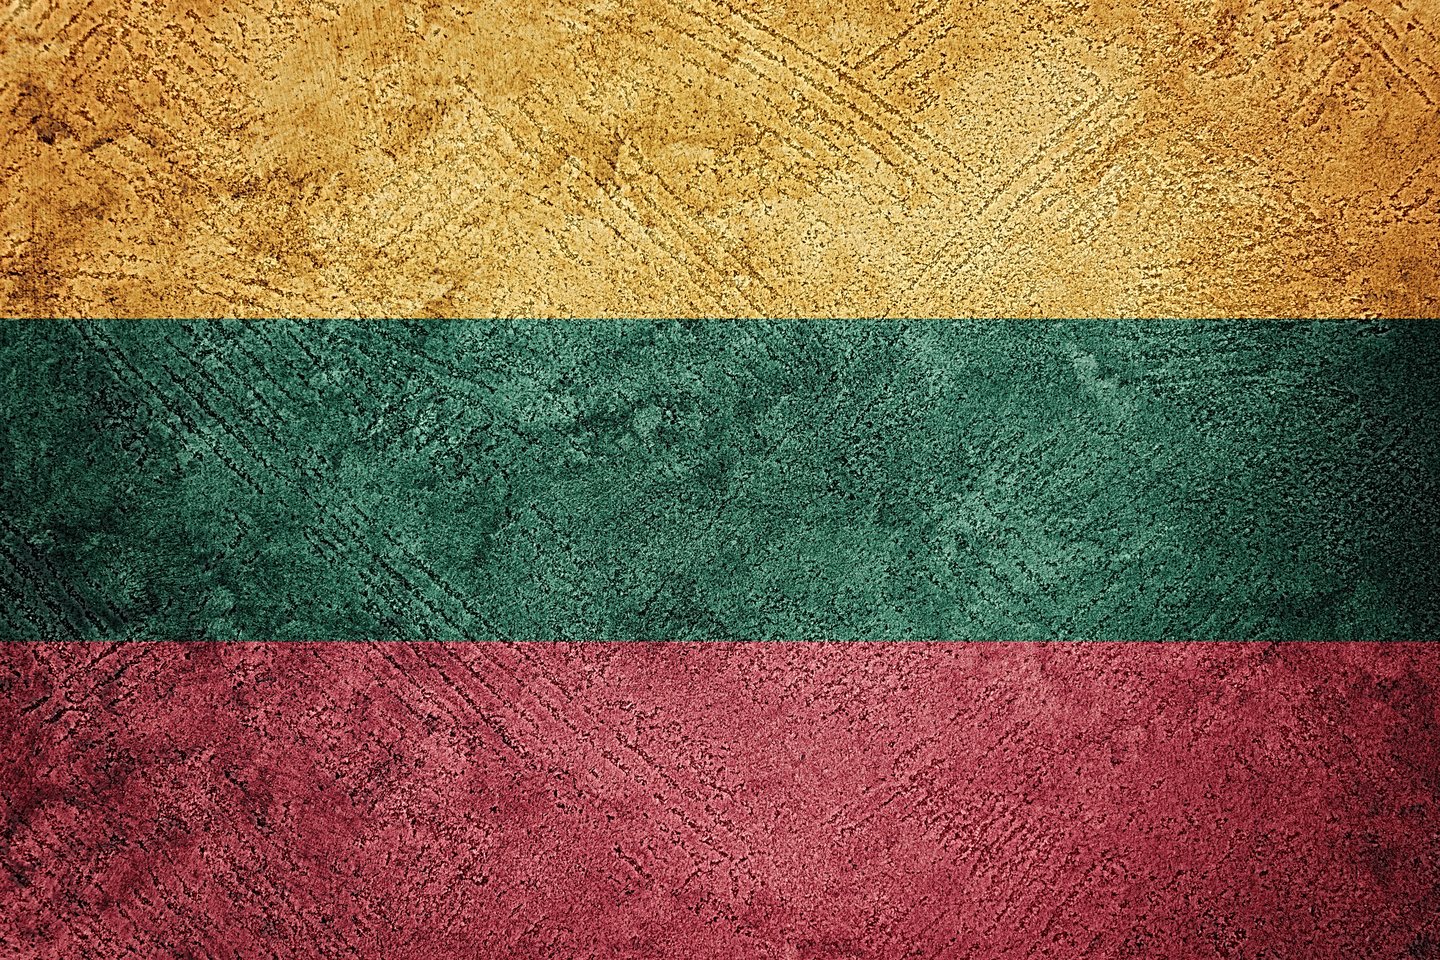  Žemaičių kalba labai ryškiai skiriasi nuo bendrinės kalbos ir kitų lietuvių tarmių.<br> 123RF iliustr.